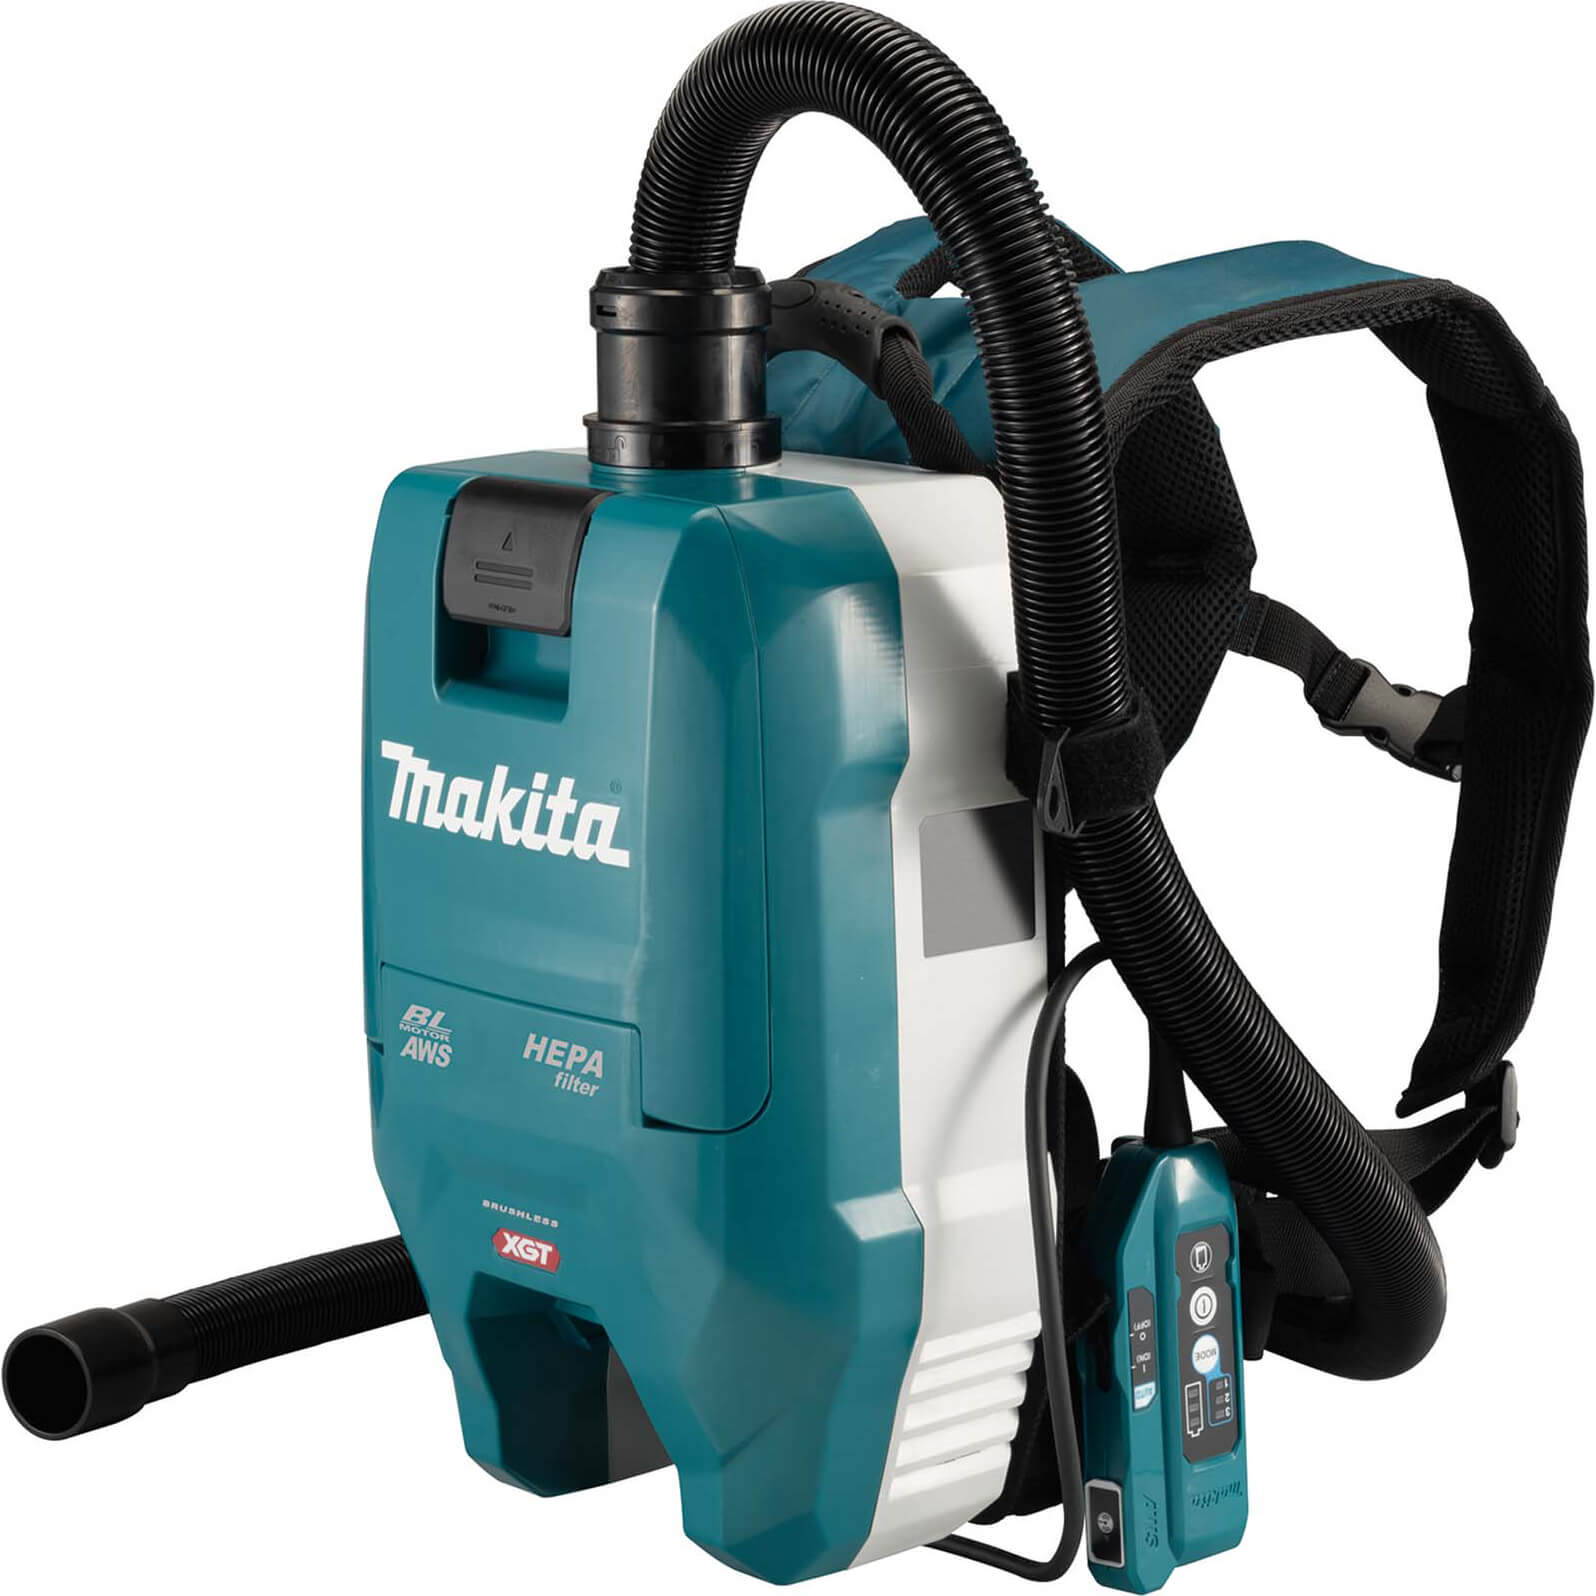 Photos - Vacuum Cleaner Makita VC009G 40v Max XGT Cordless Brushless Backpack  No Ba 